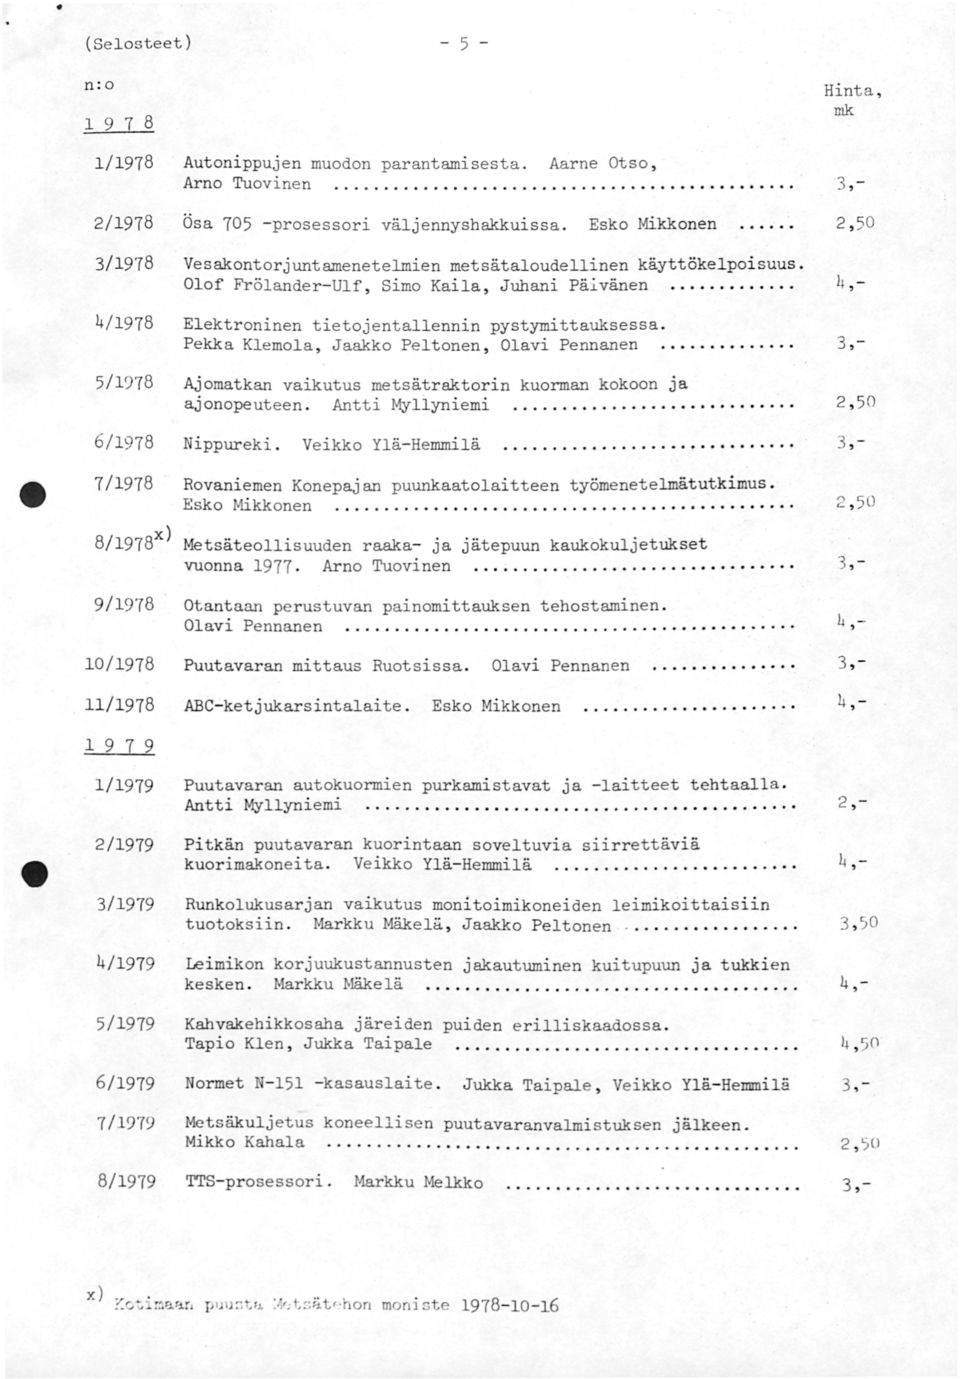 Pekka Klemola, Jaakko Peltonen, Olavi Pennanen.......... 3,- Ajomatkan vaikutus metsätraktorin kuorman kokoon ja ajonopeuteen. Antti Myliyniemi................, 50 6/1978 Nippureki.